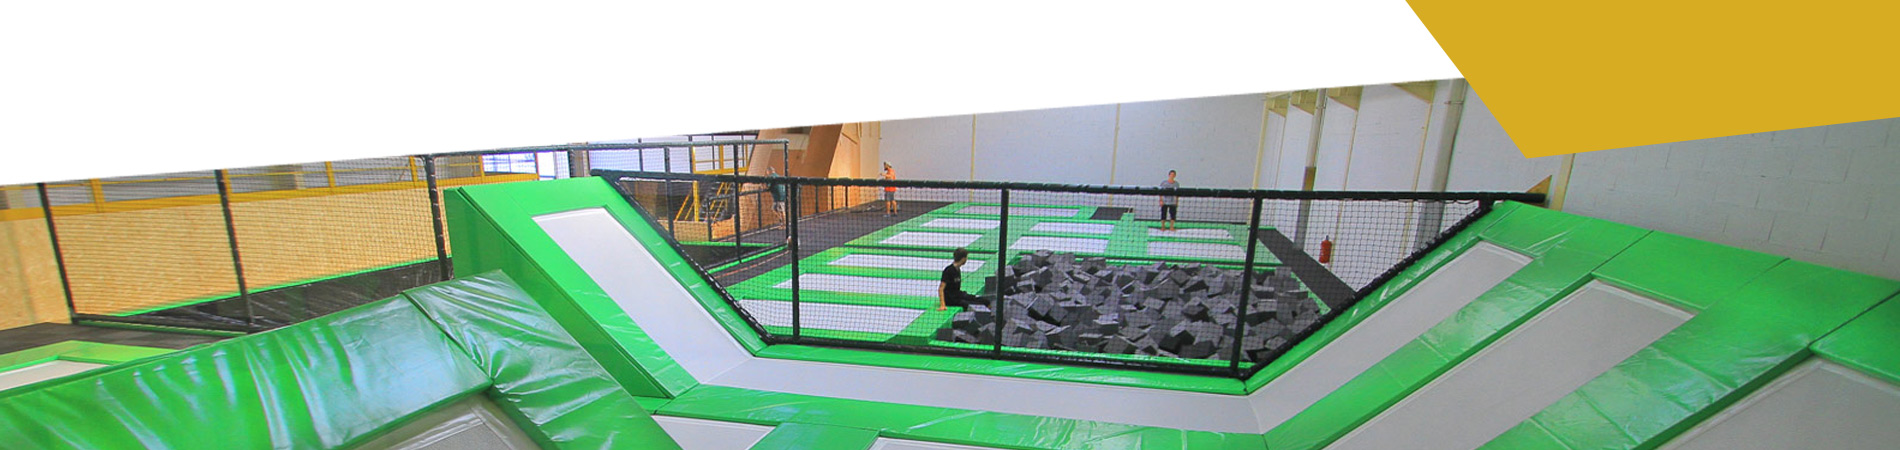 salle-trampoline2